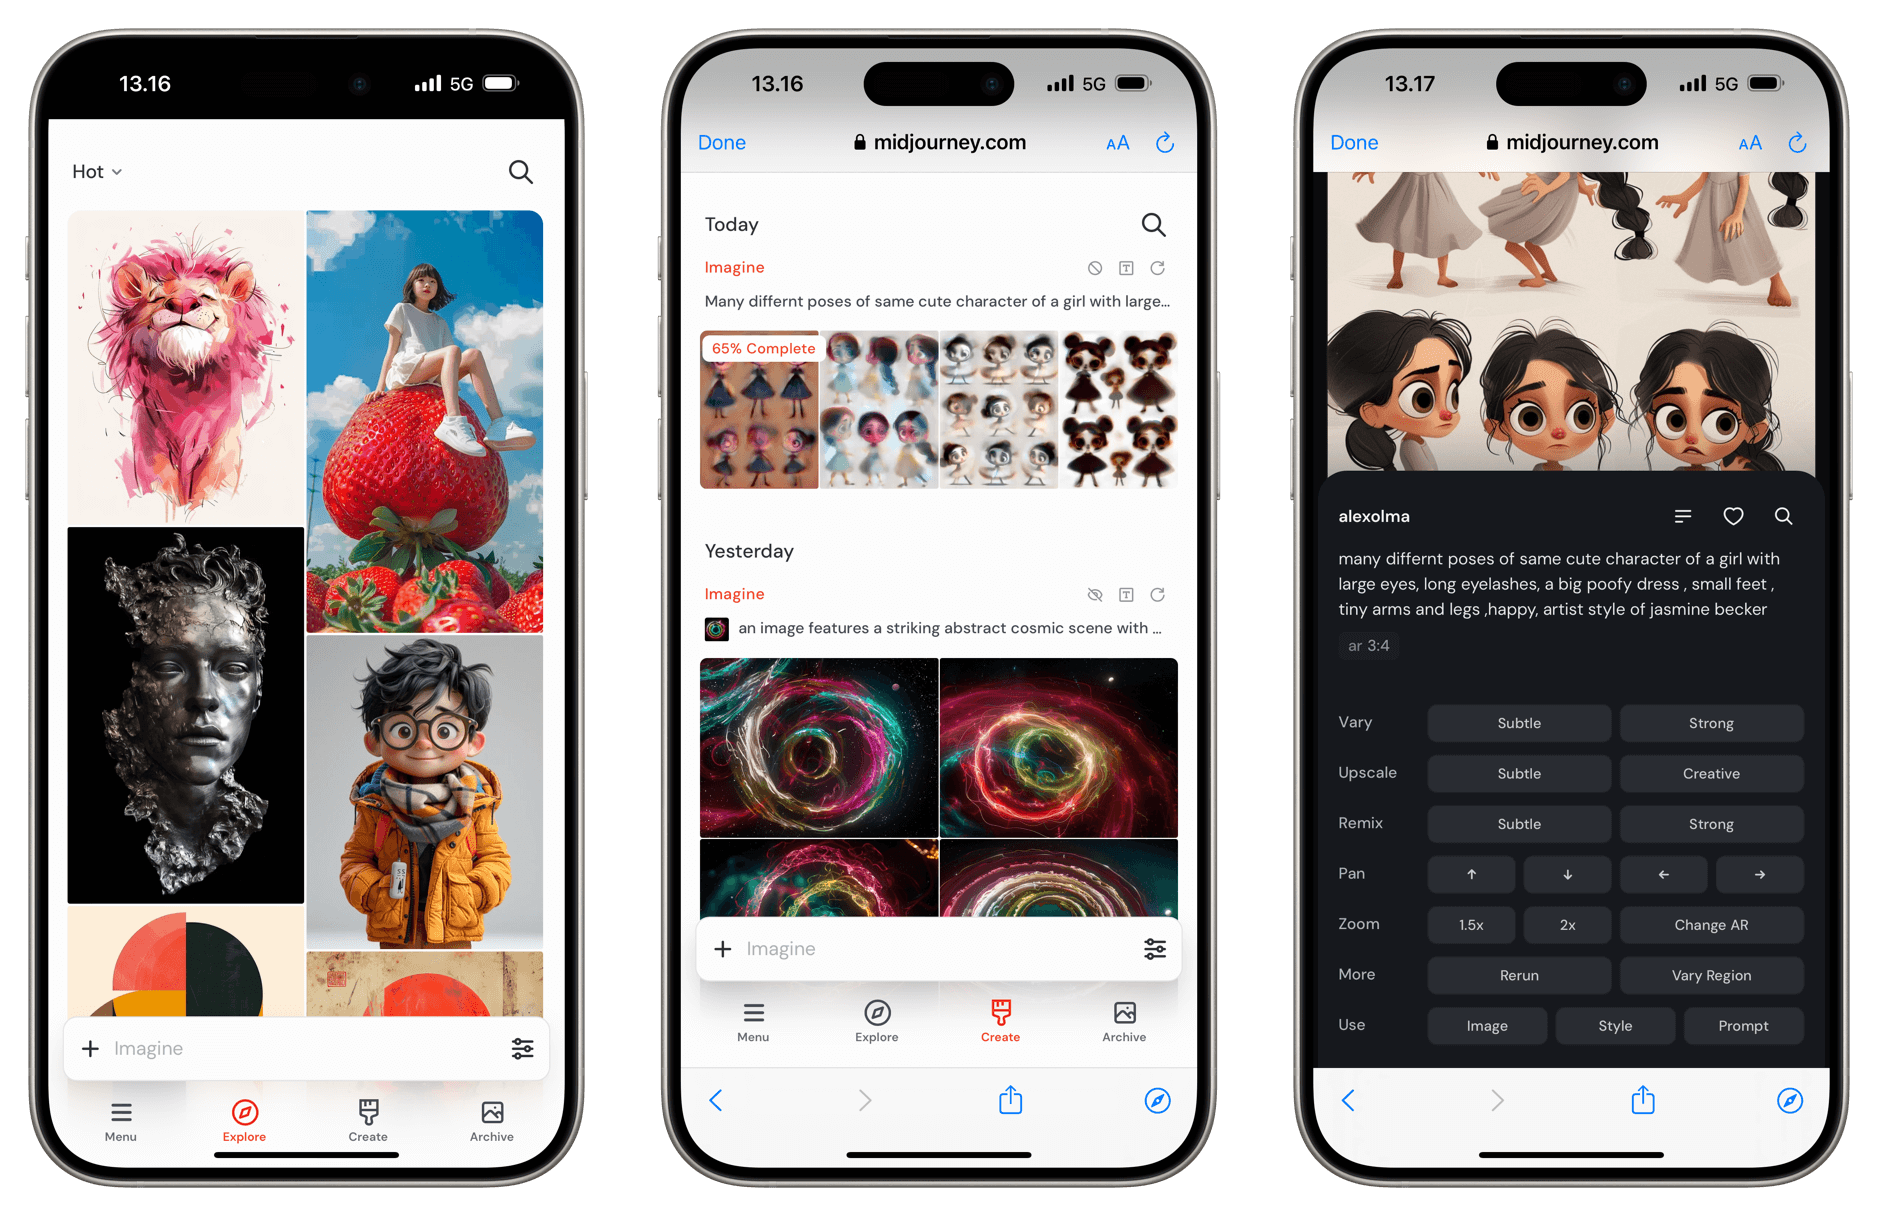 Das Bild zeigt drei Screenshots von einem iPhone, das eine KI-basierte Kunst-App namens Midjourney benutzt. Die App stellt verschiedene Kunstwerke dar, darunter ein Porträt eines Mädchens, abstrakte kosmische Szenen und die Gestaltung einer Figur mit verschiedenen Posen.